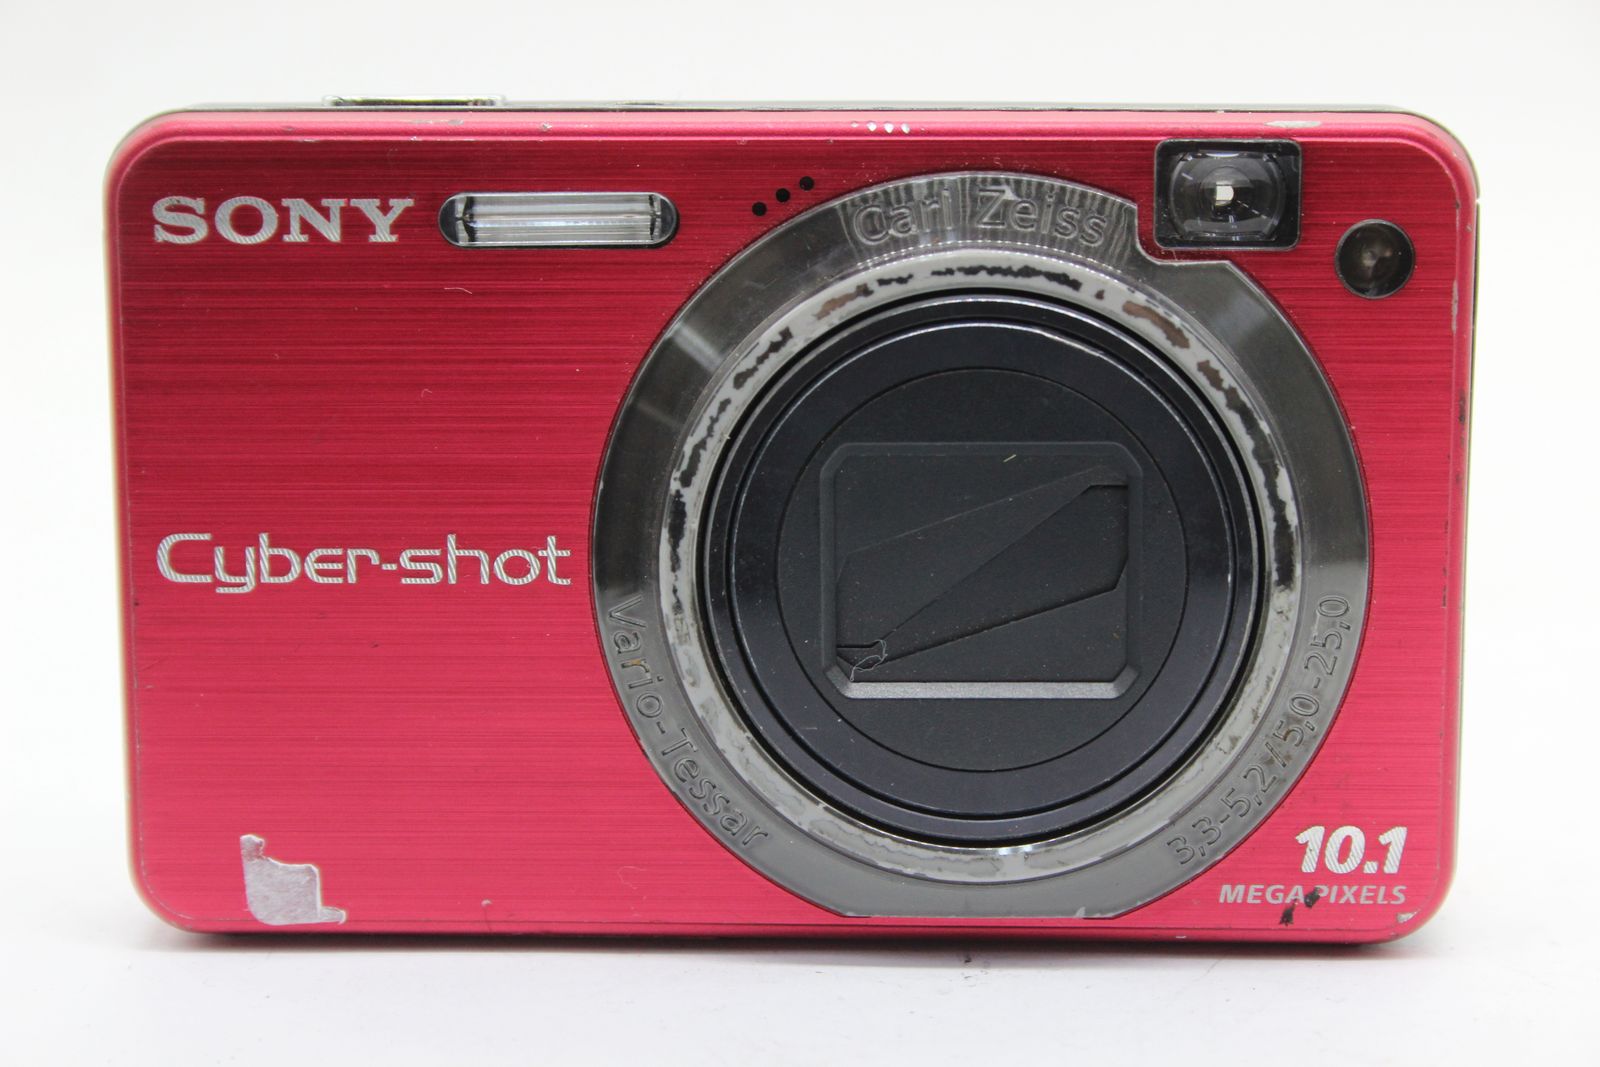 【返品保証】 ソニー SONY Cyber-shot DSC-W170 ピンク 5x バッテリー付き コンパクトデジタルカメラ s5080